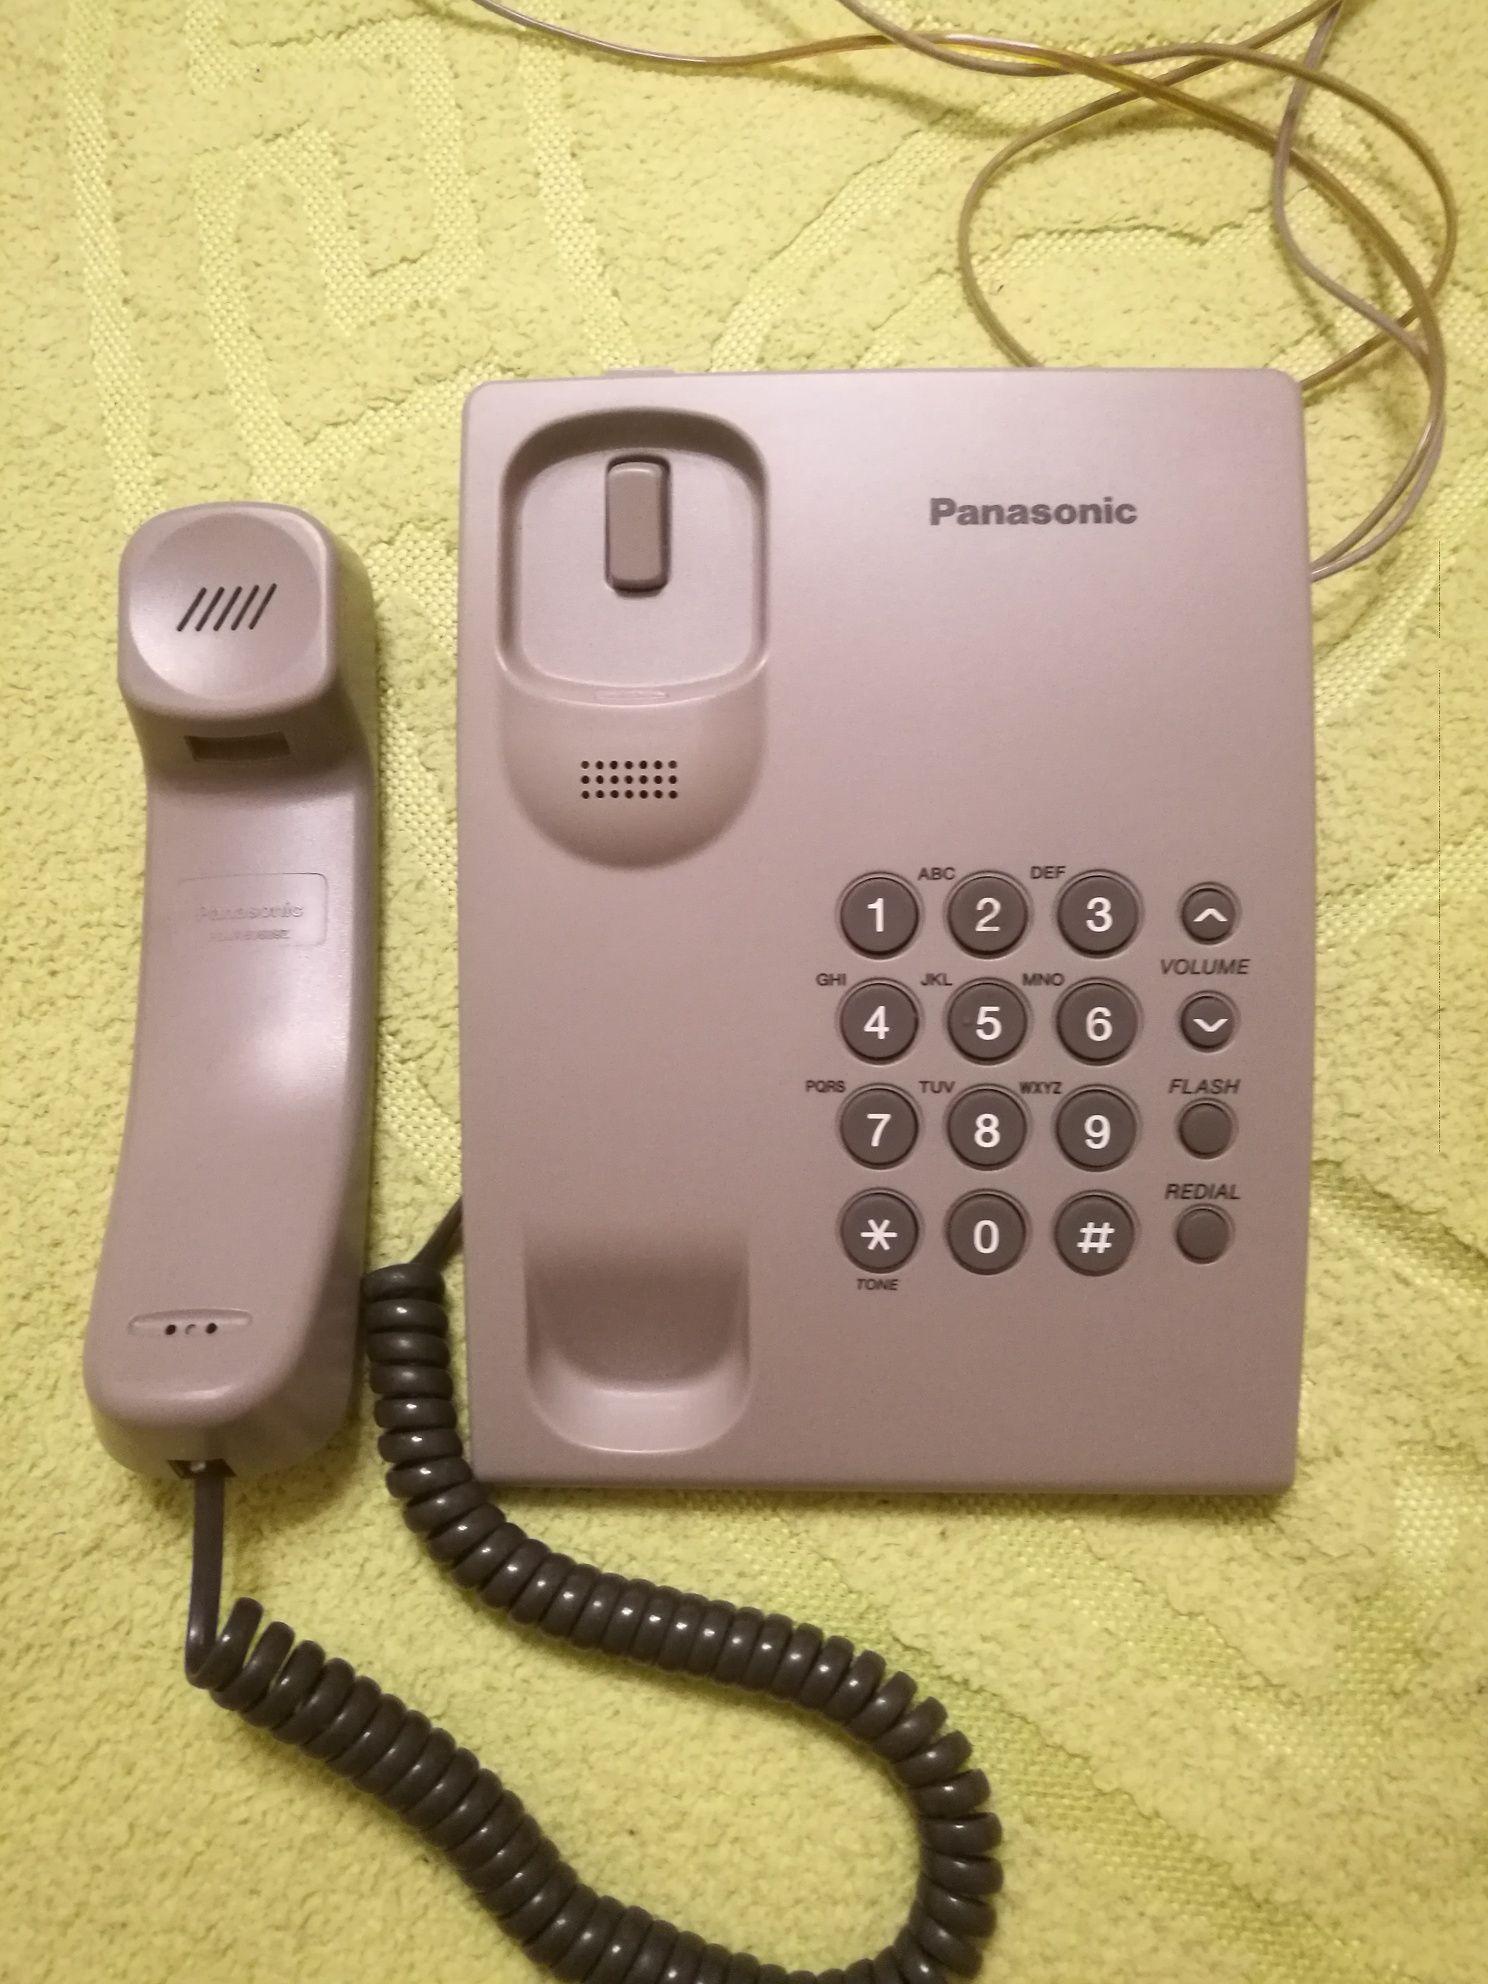 Стационарный телефон Samsung SP-F203A